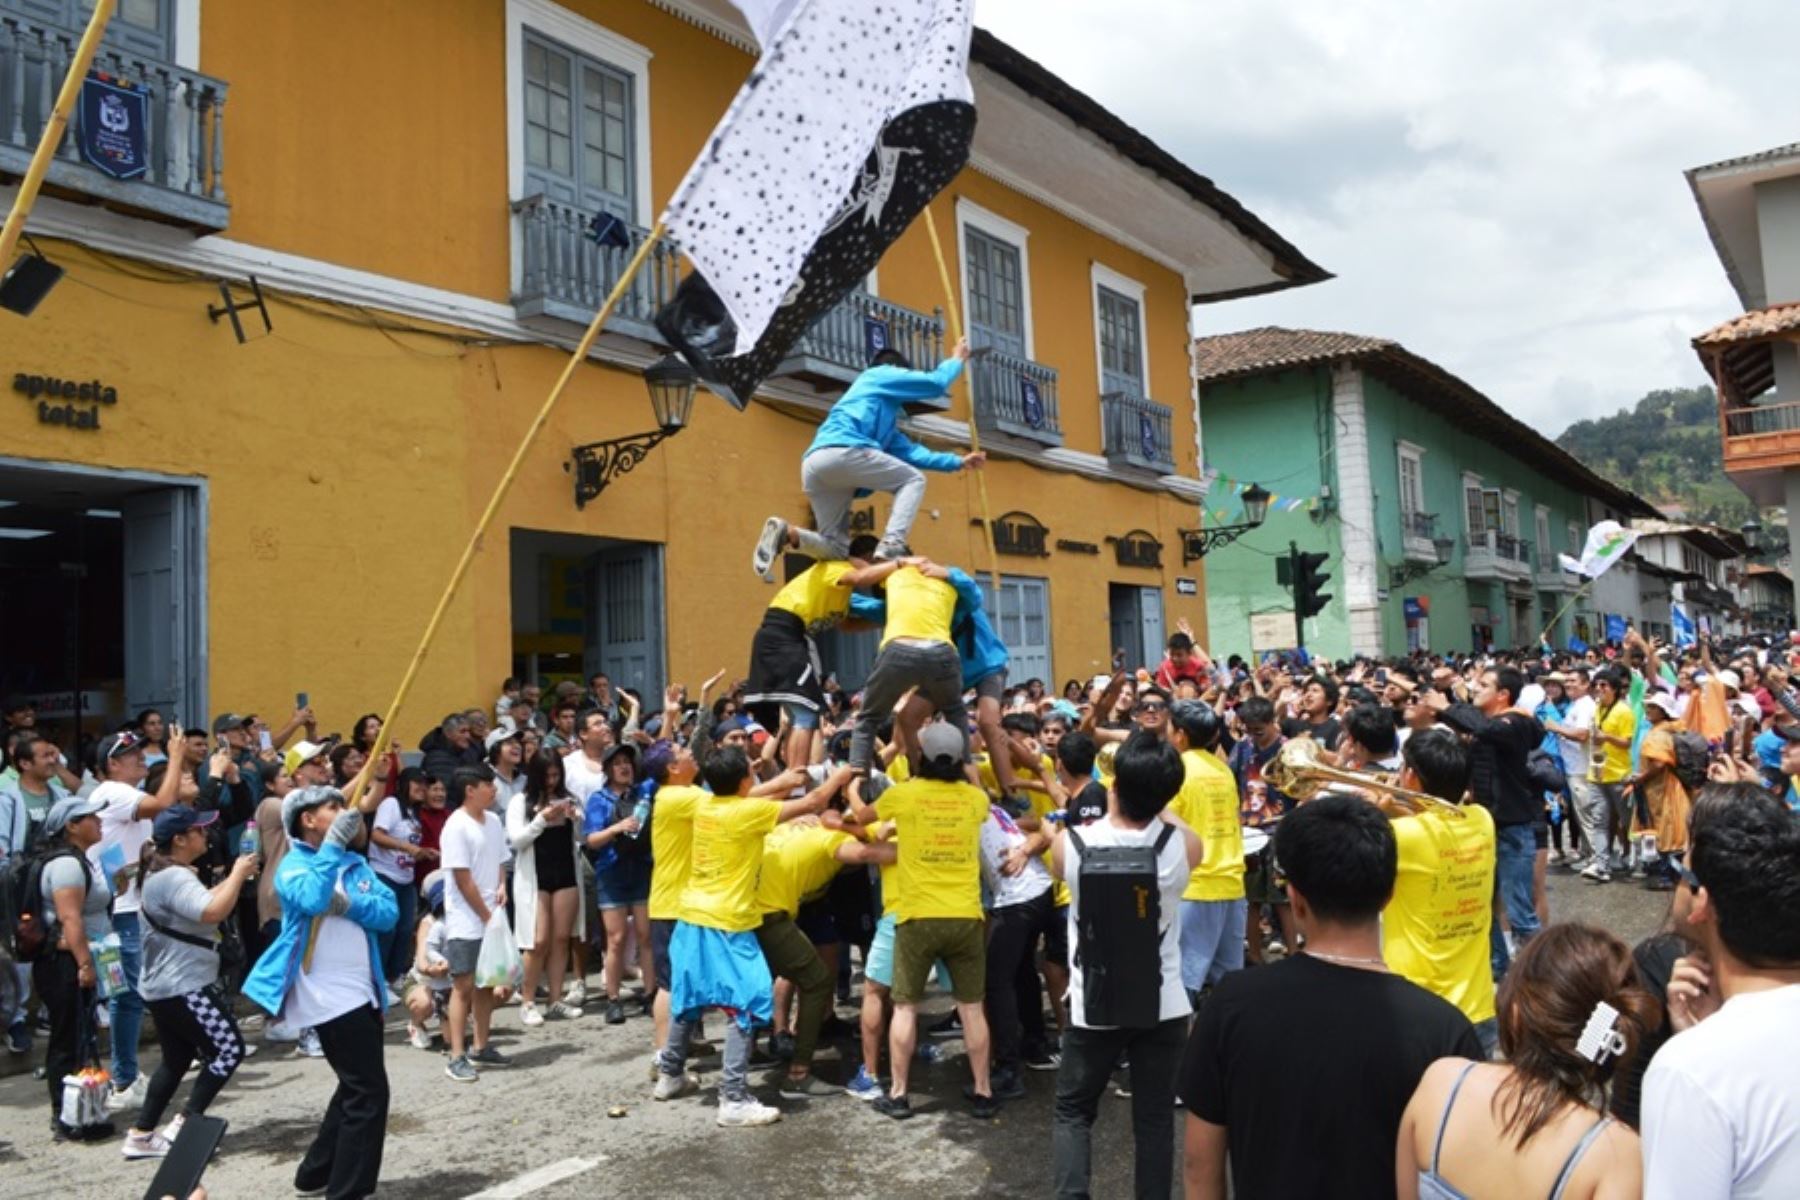 Hoy se inició el tradicional carnaval de Cajamarca con un estrepitoso bando en el que participaron instituciones públicas, privadas y delegaciones de diversos barrios que recorrieron las principales calles del centro histórico danzando y cantando conocidas canciones de la fiesta popular que se prolongará hasta el 24 de febrero.